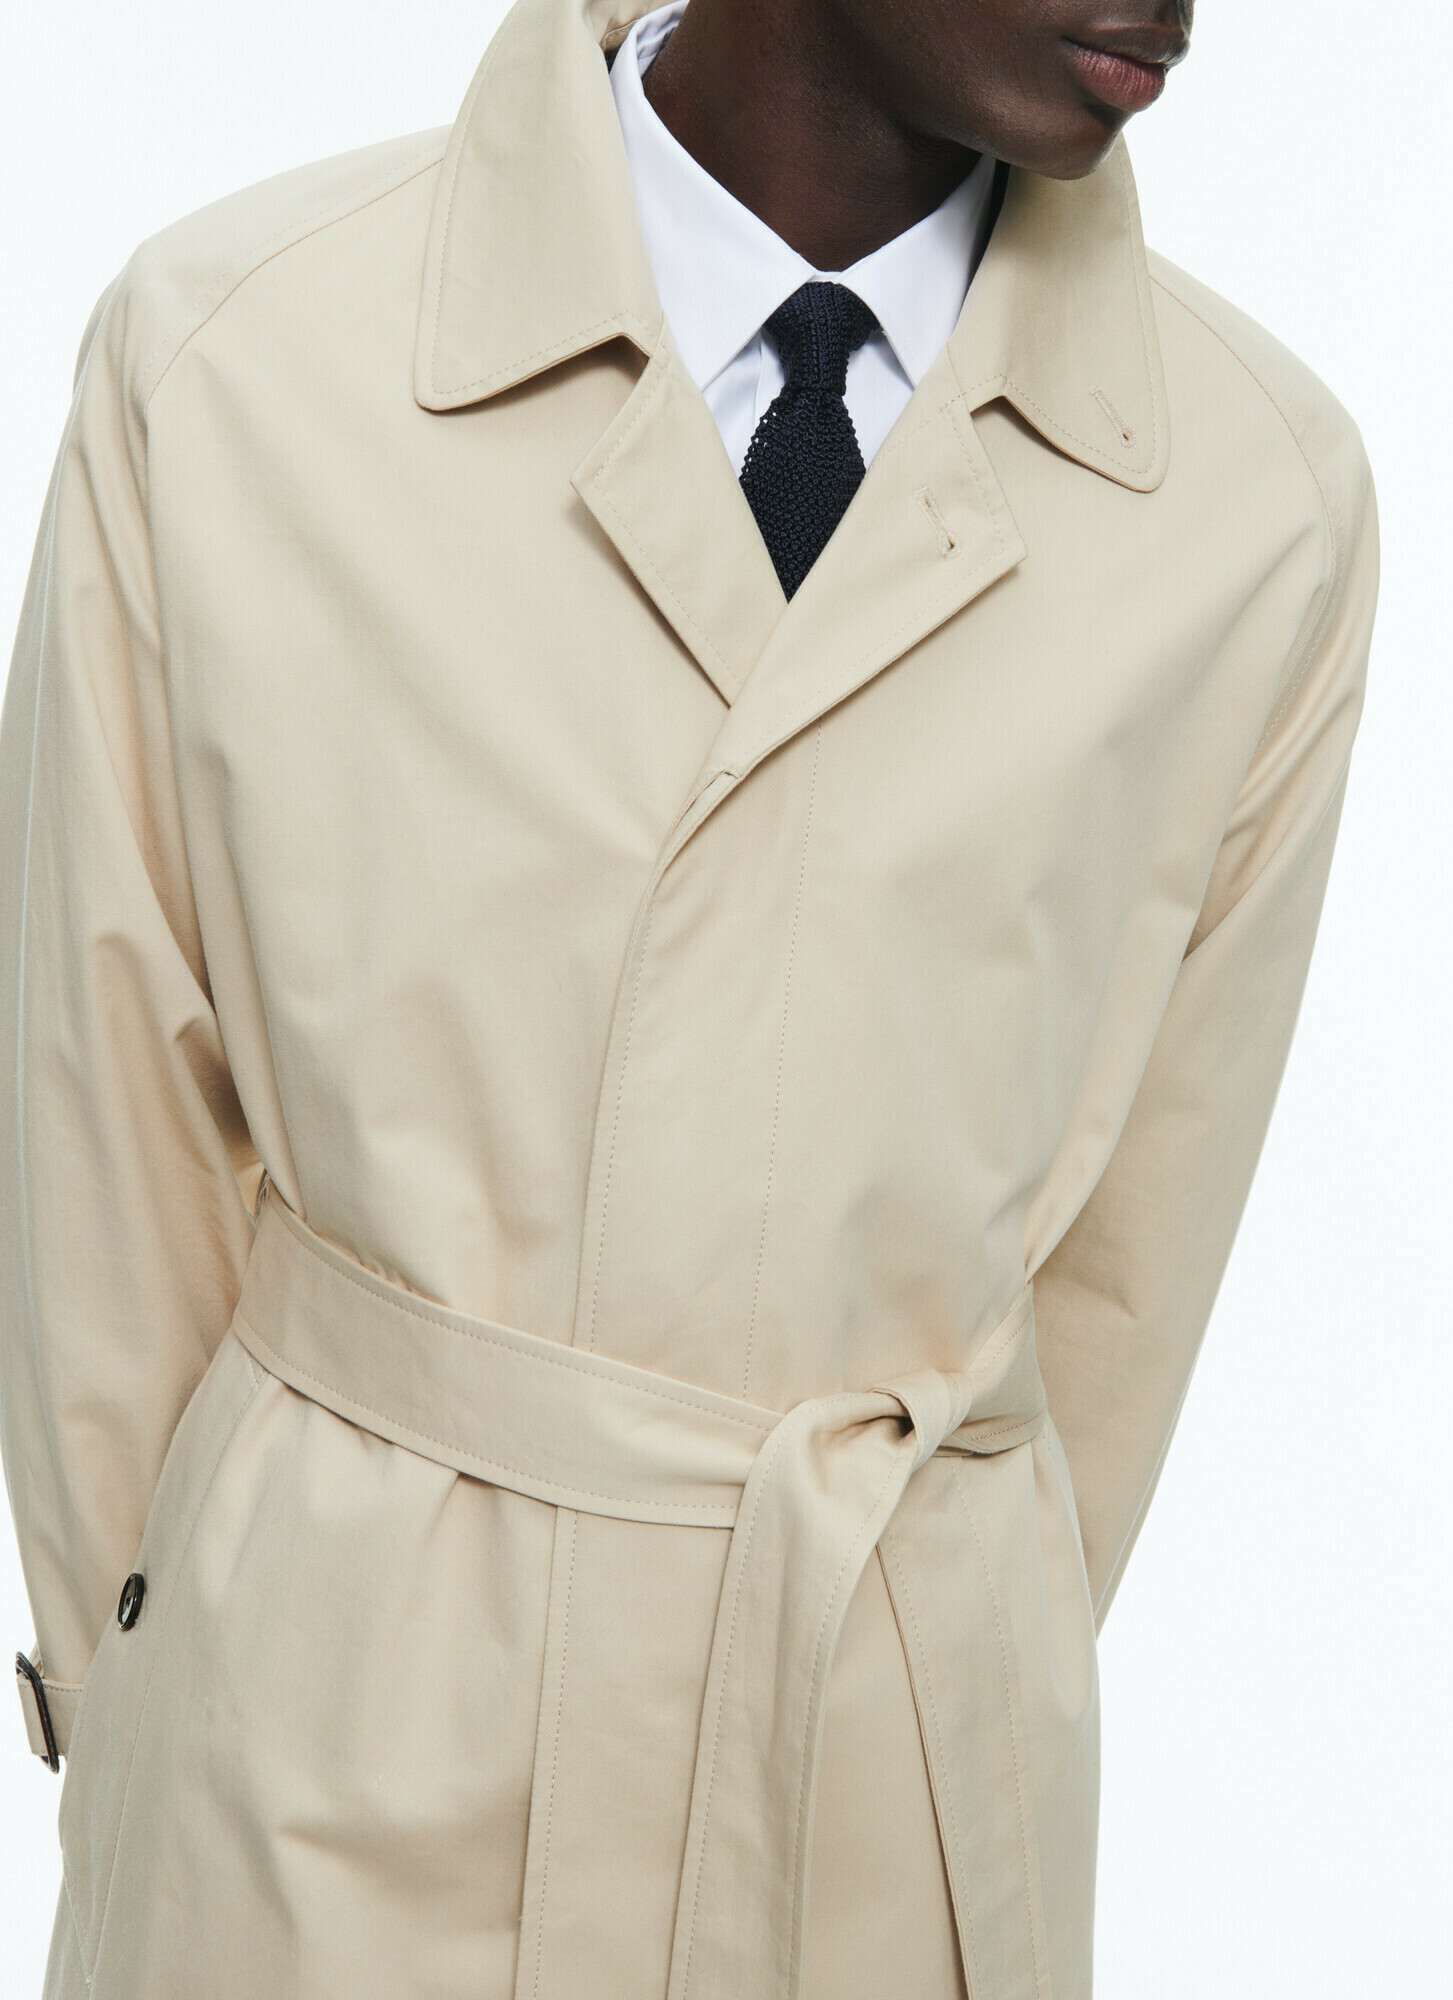 Découvrez la sélection de manteaux et blousons Fursac - Fursac - Vetement Homme & Costume Homme